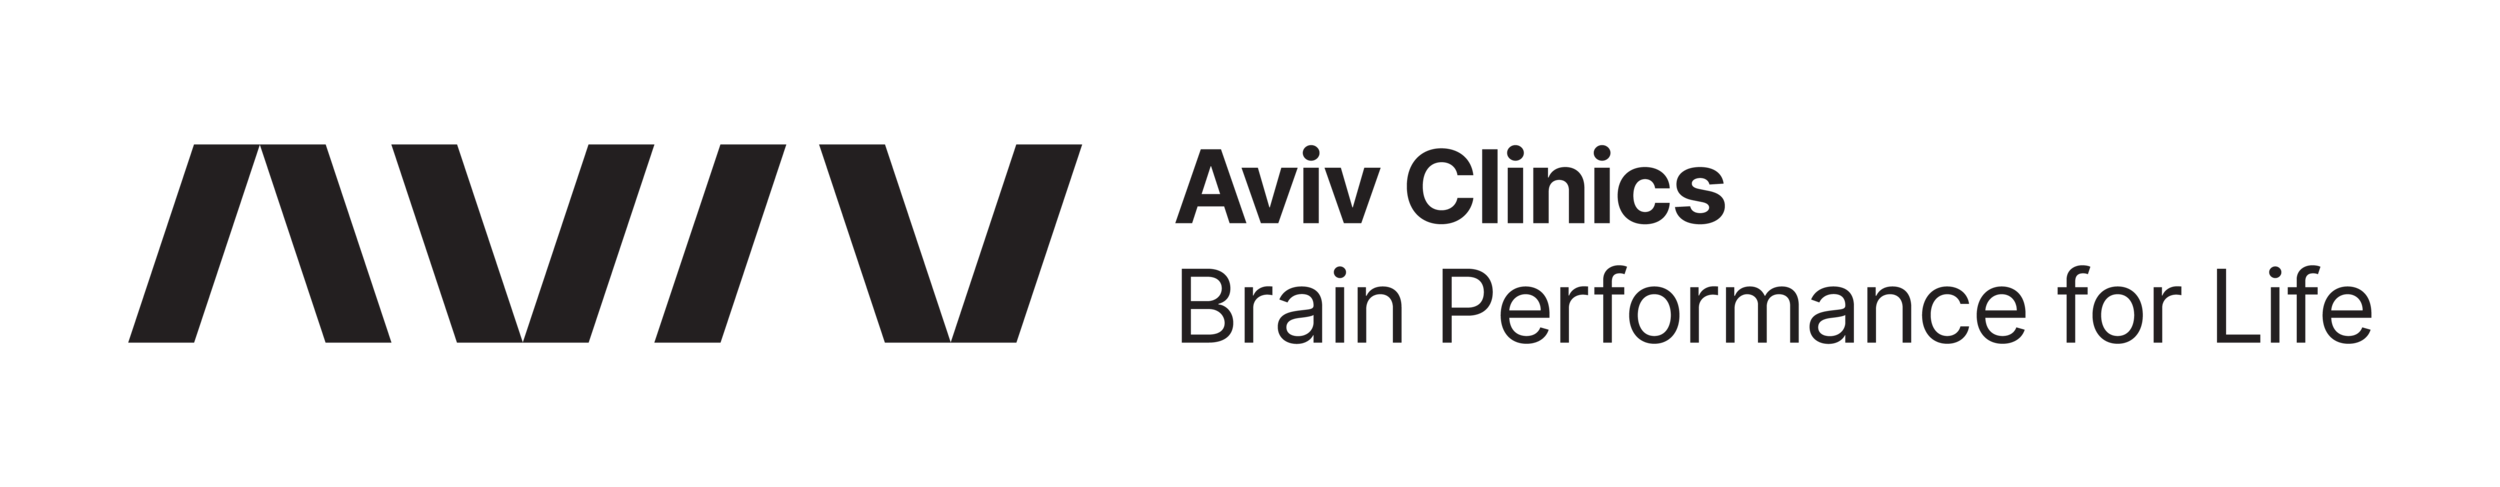 AVIV_CLINICS-01.png